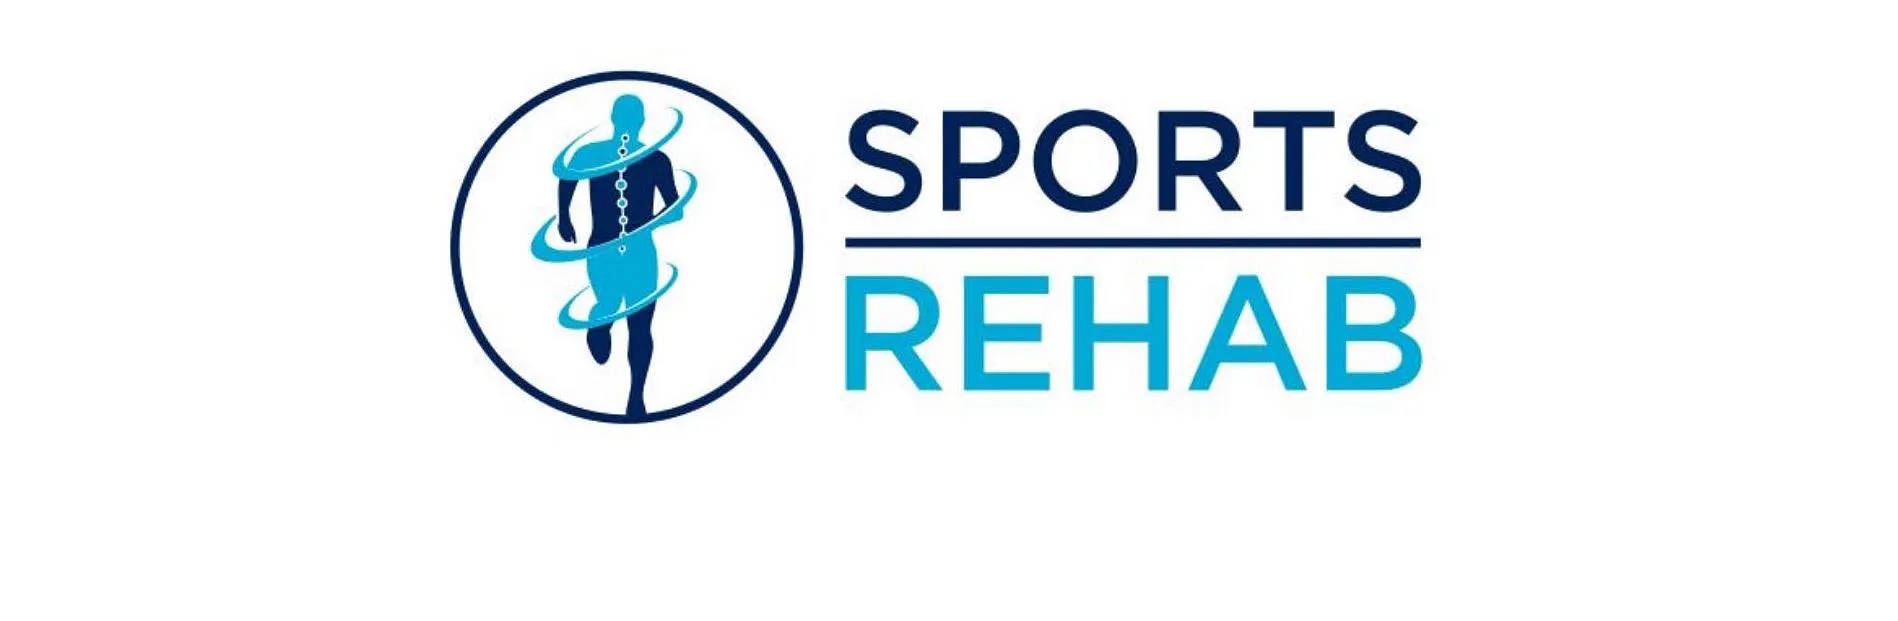 Sports Rehab Bellinzona